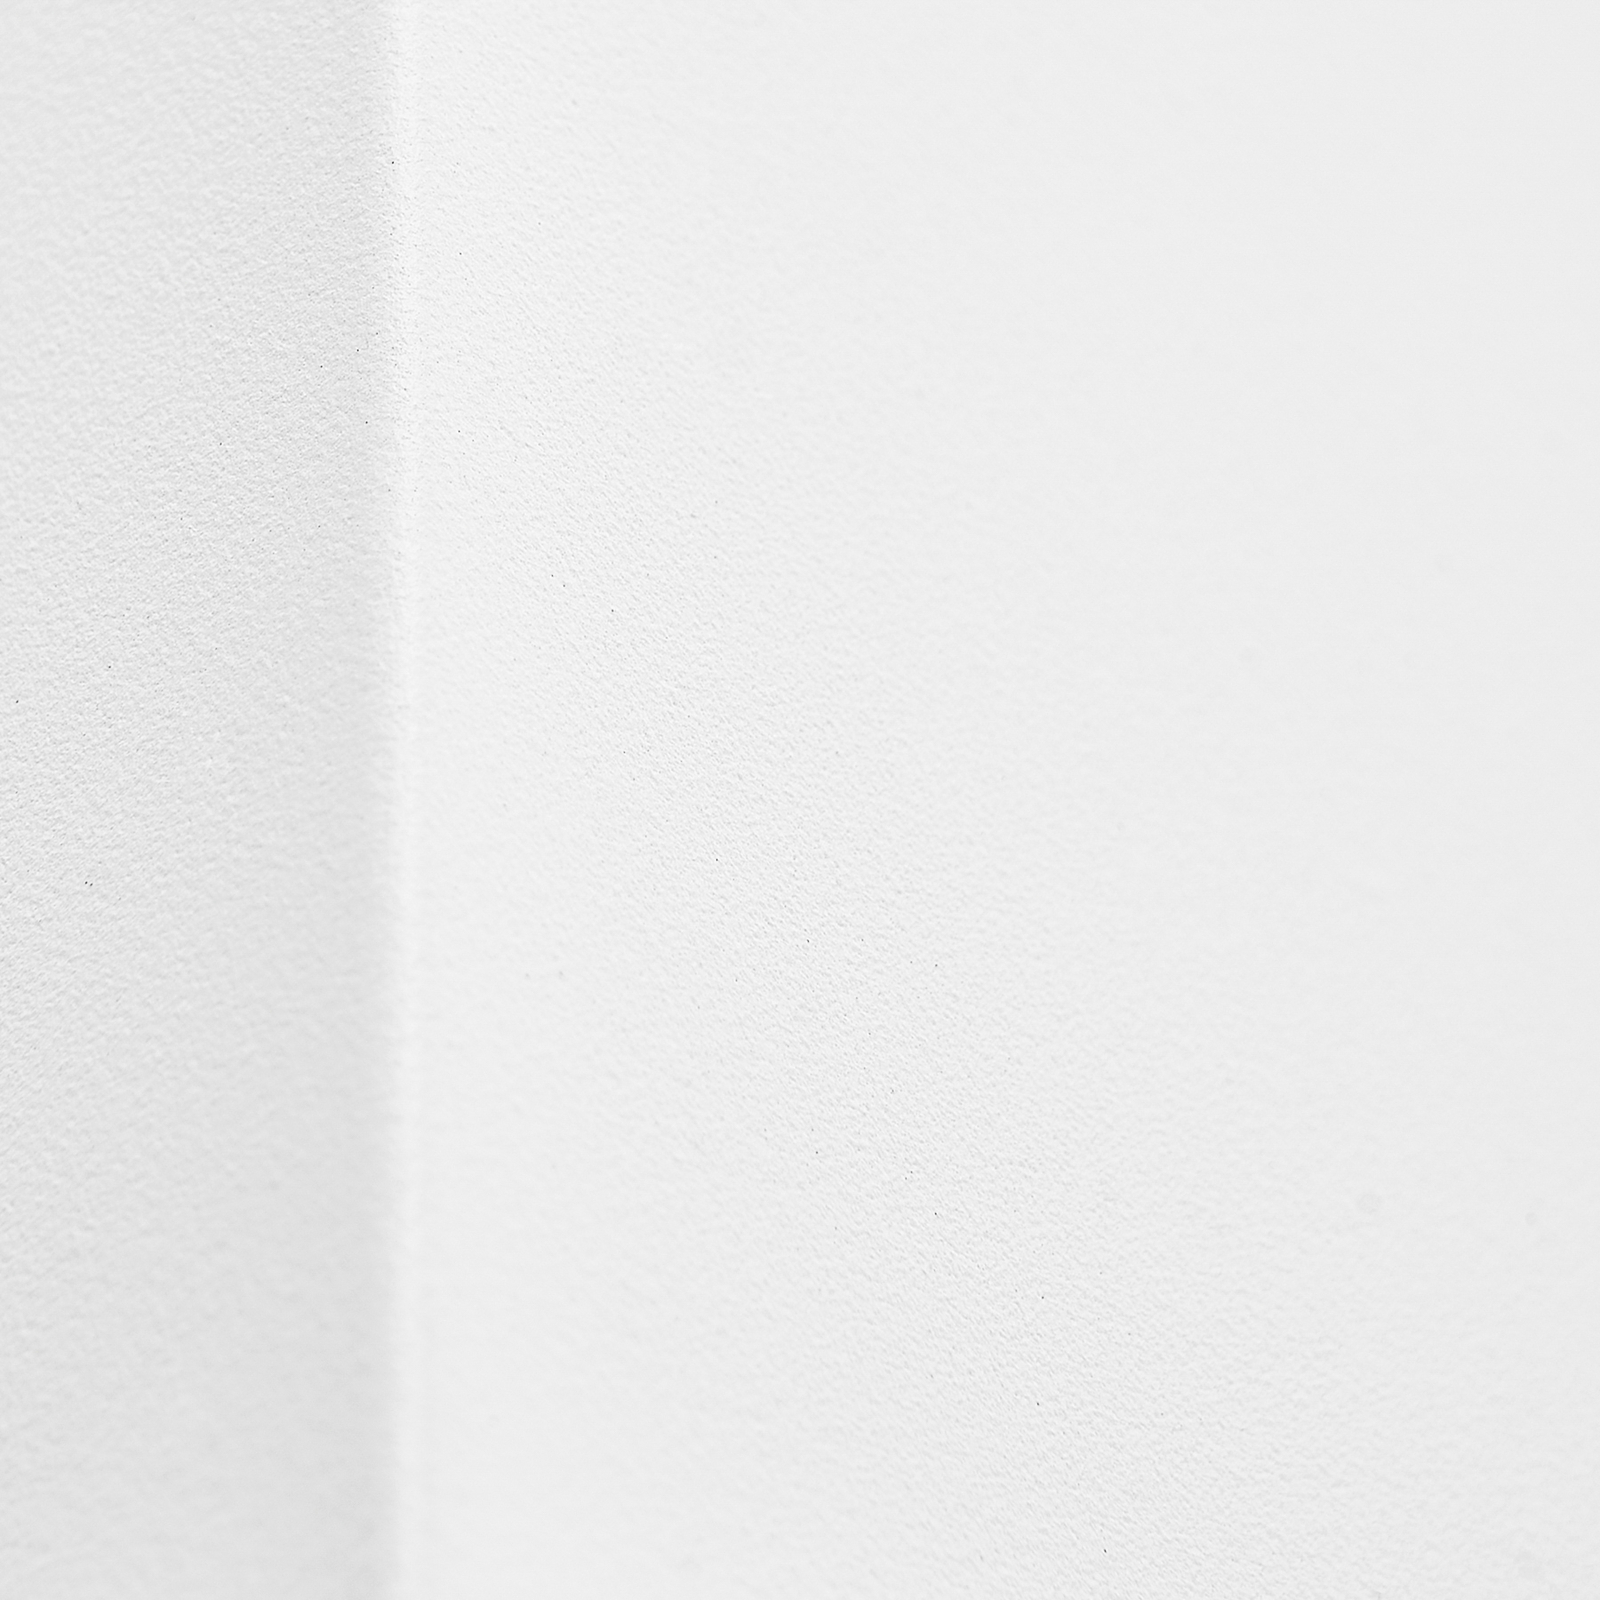 Prios buitenwandlamp Tetje, wit, hoekig, 10 cm, set van 4